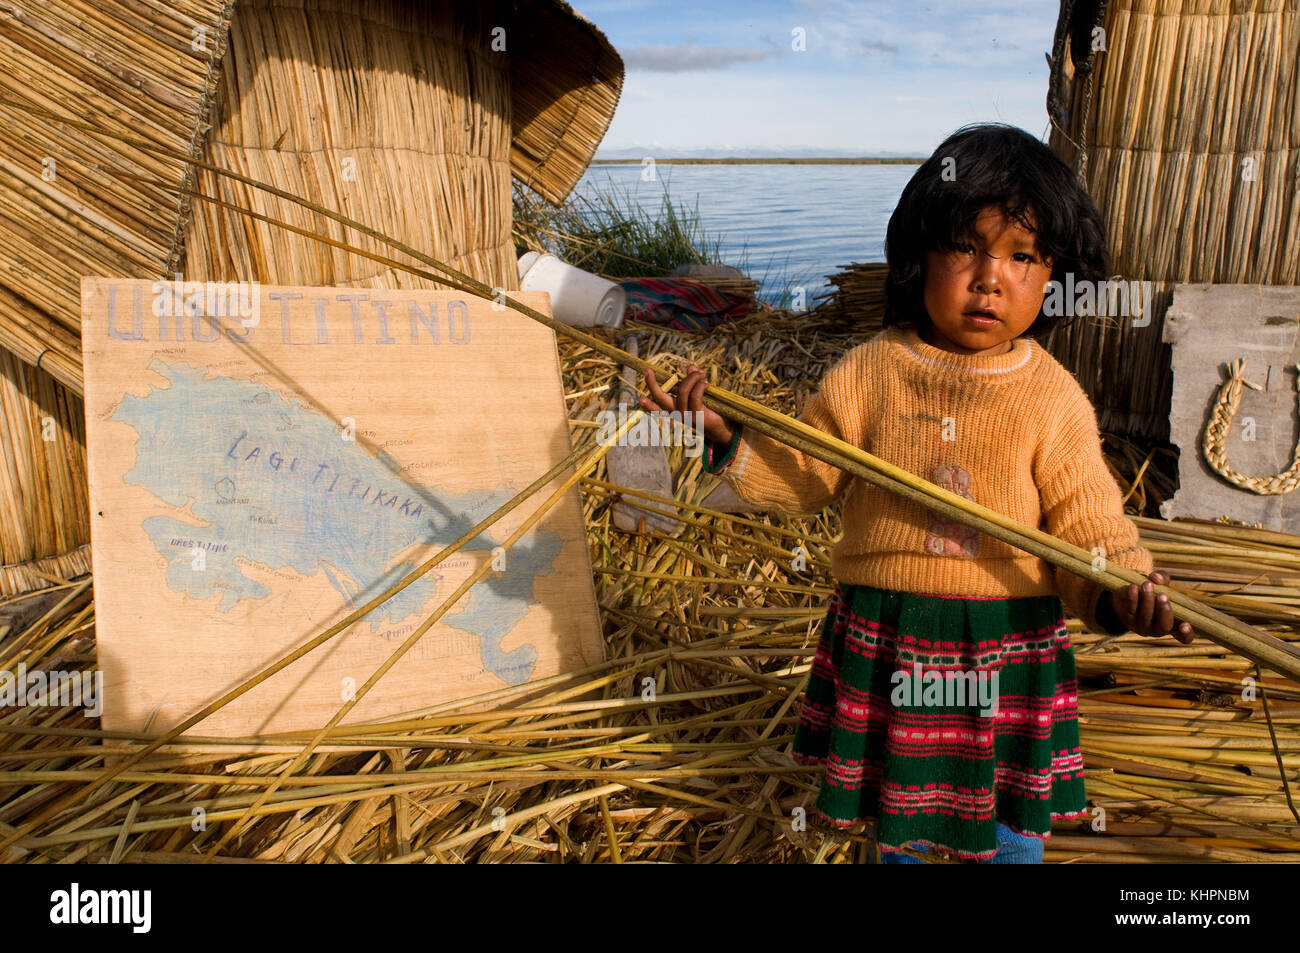 L'île uros, lac Titicaca, Pérou, Amérique du Sud. une fille sur l'île de los Uros situé à l'intérieur du lac Titicaca joue avec un roseau totora. Banque D'Images